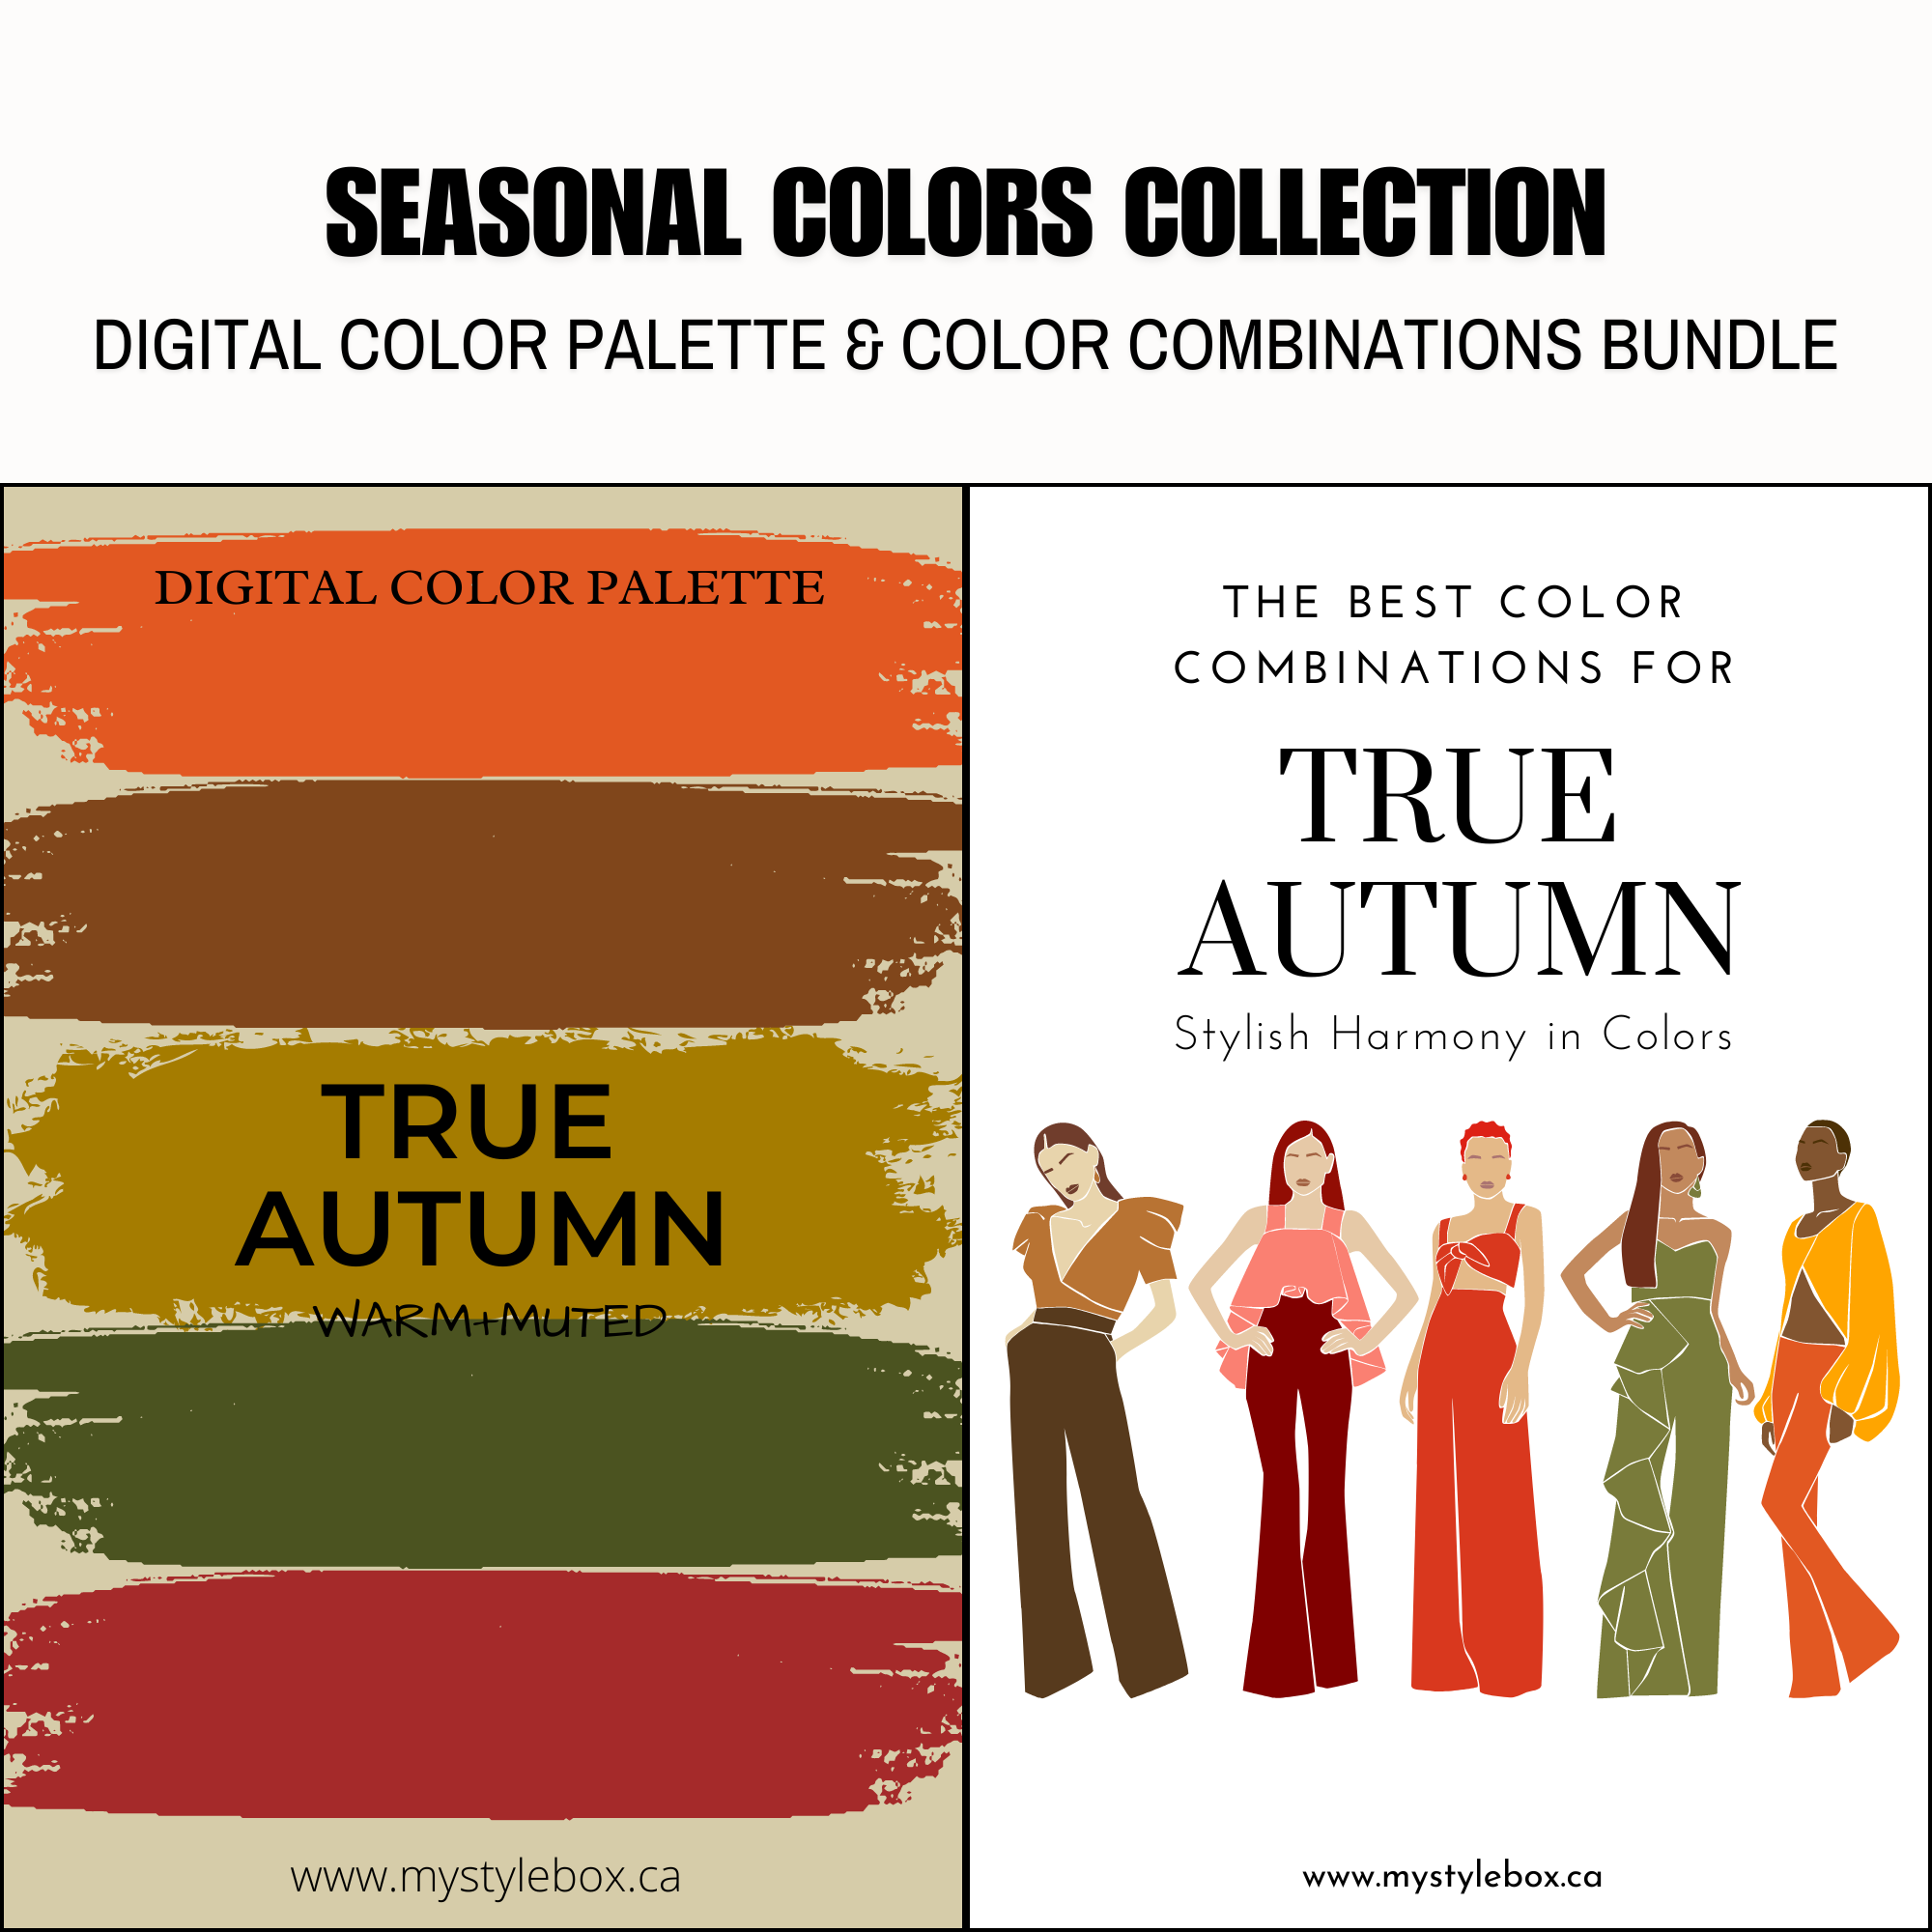 True Autumn Season Digital Color Palette and Color Combinations Bundle